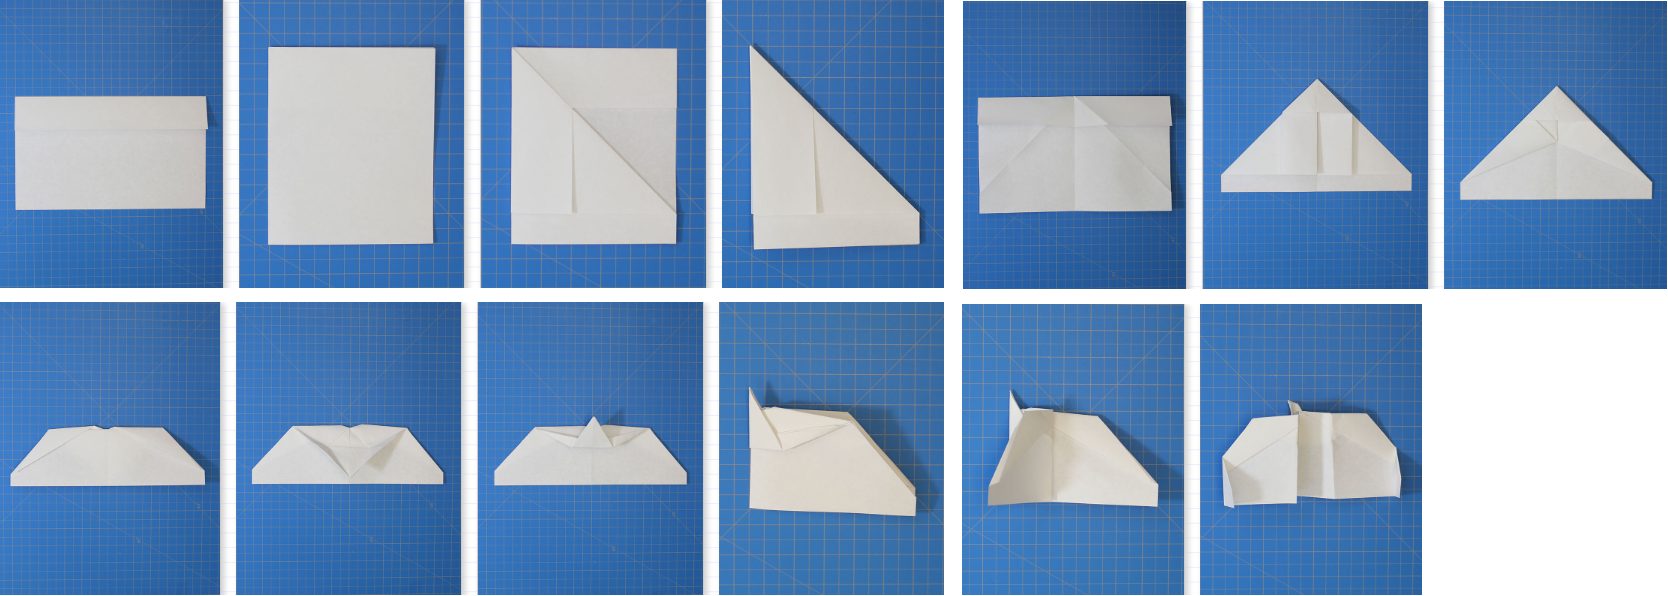 pasos para hacer un avion de papel rápido